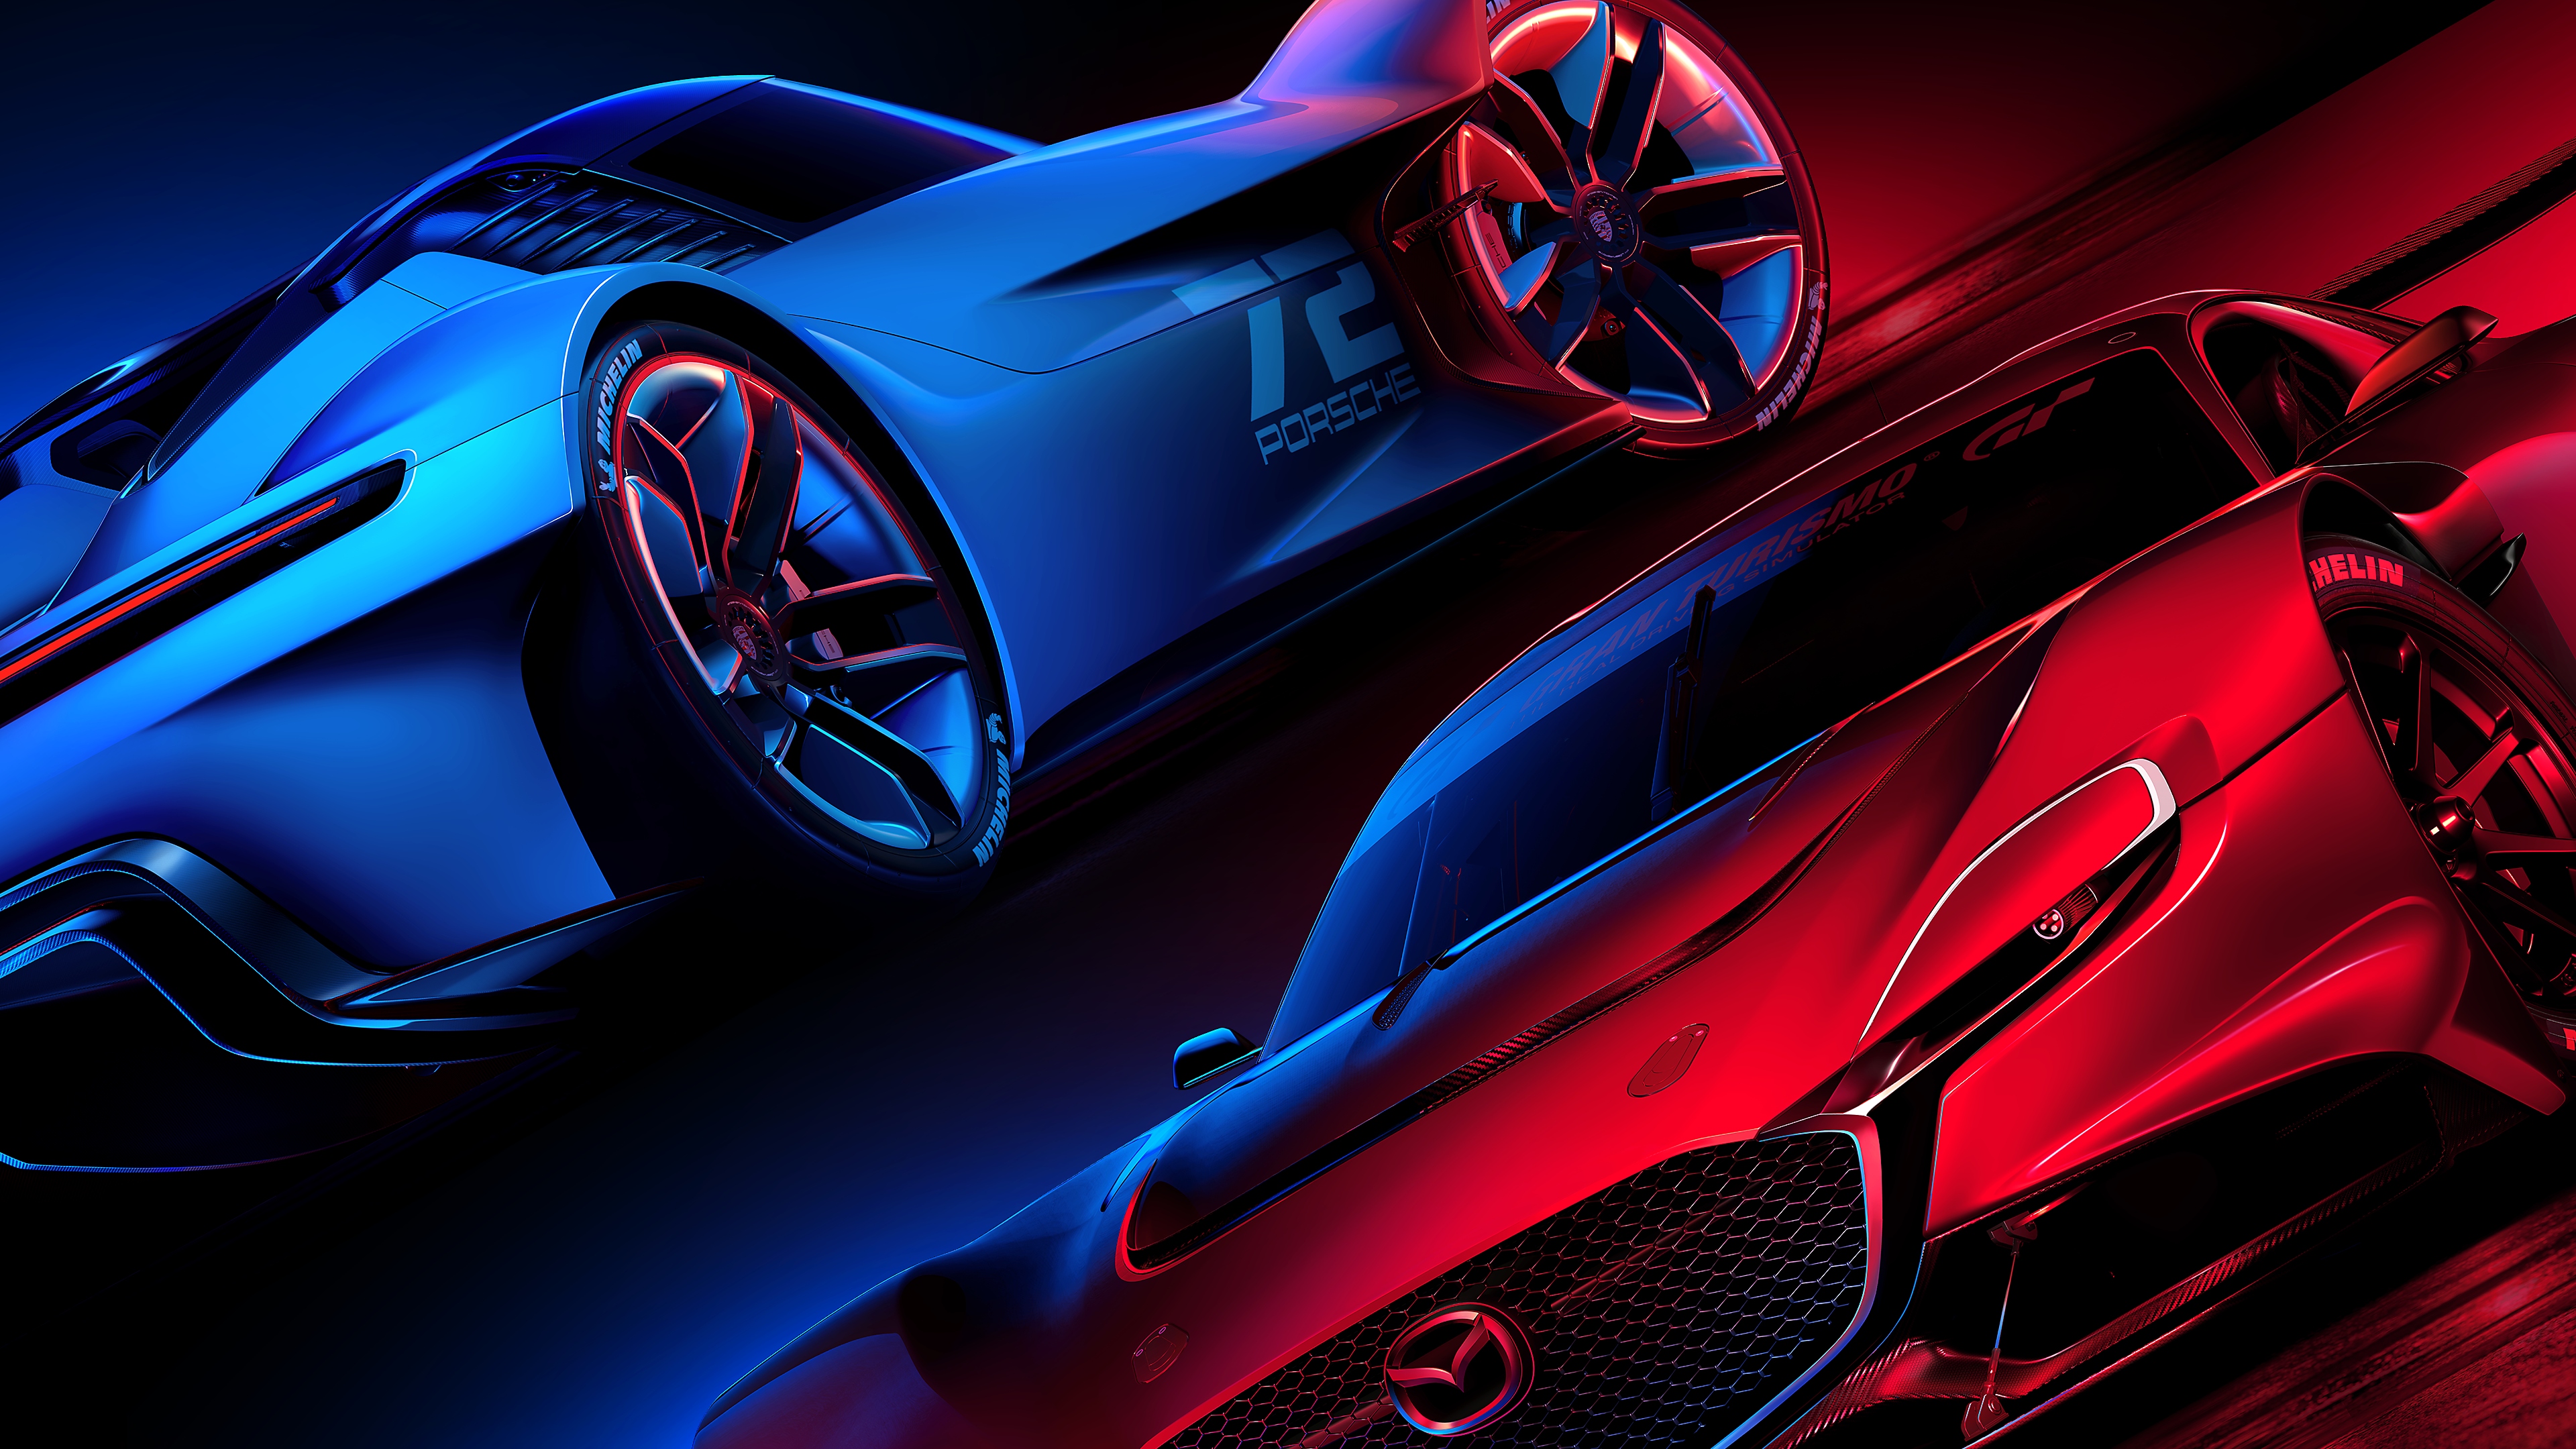 Gran Turismo 7 – hovedillustrasjon i rødt og blått